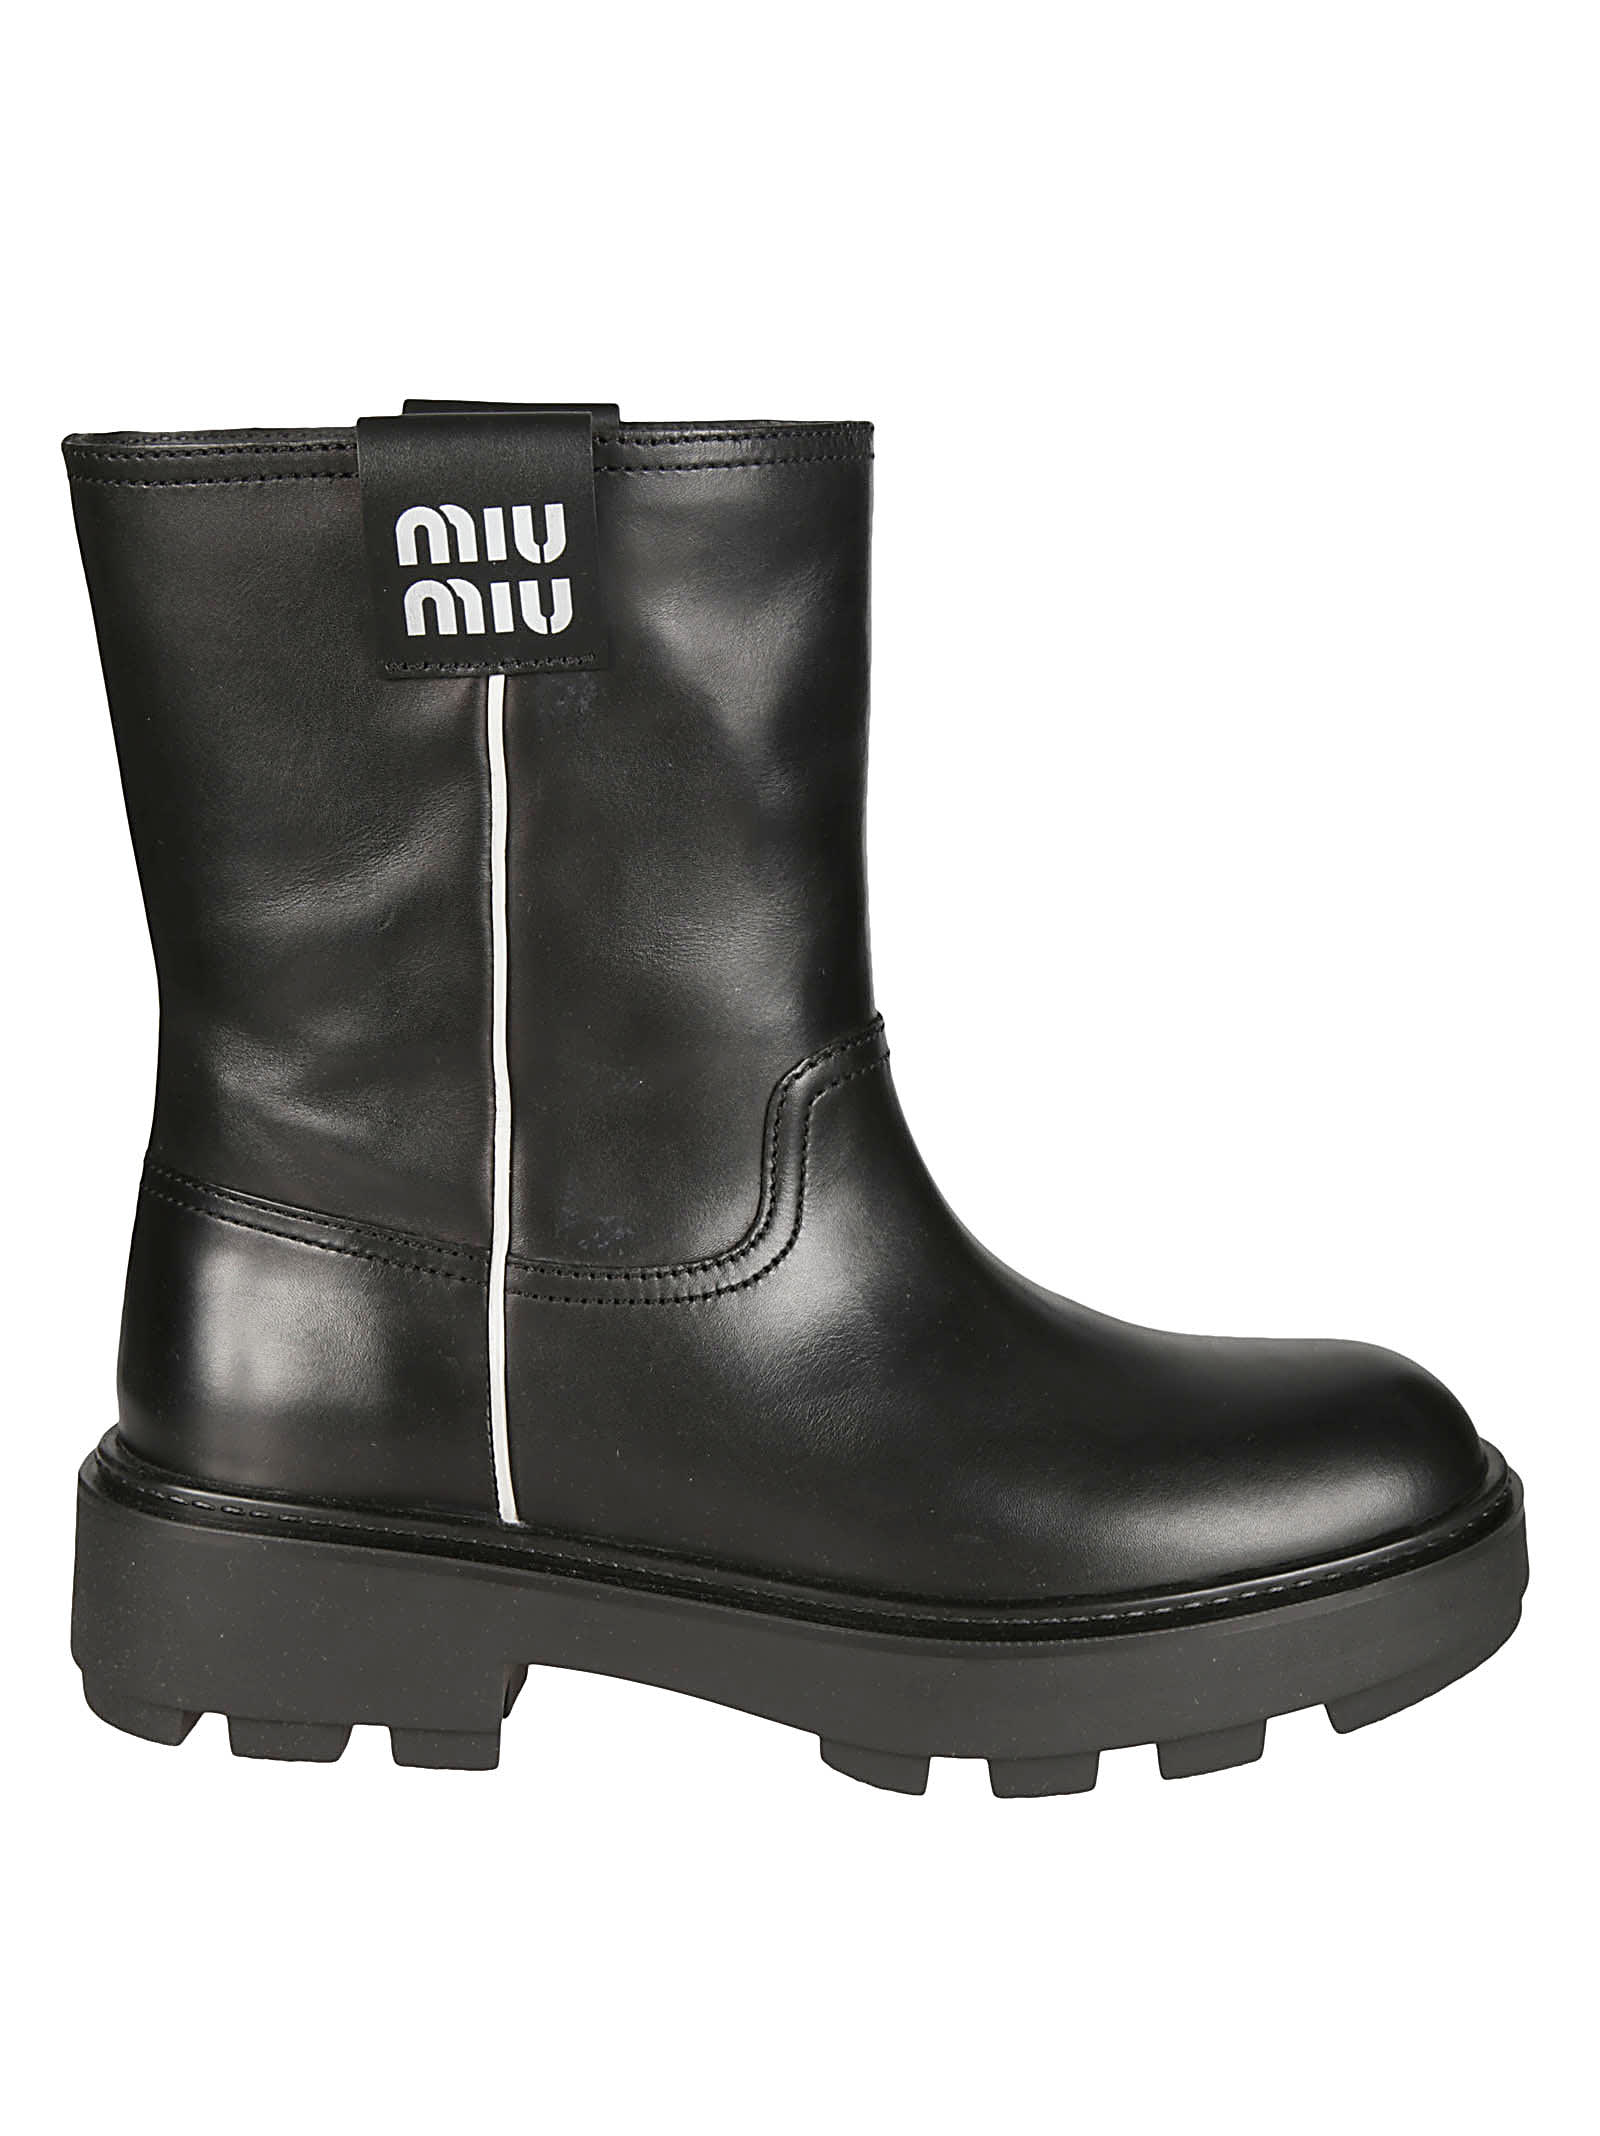 Miu Miu Classic Logo Patched Boots